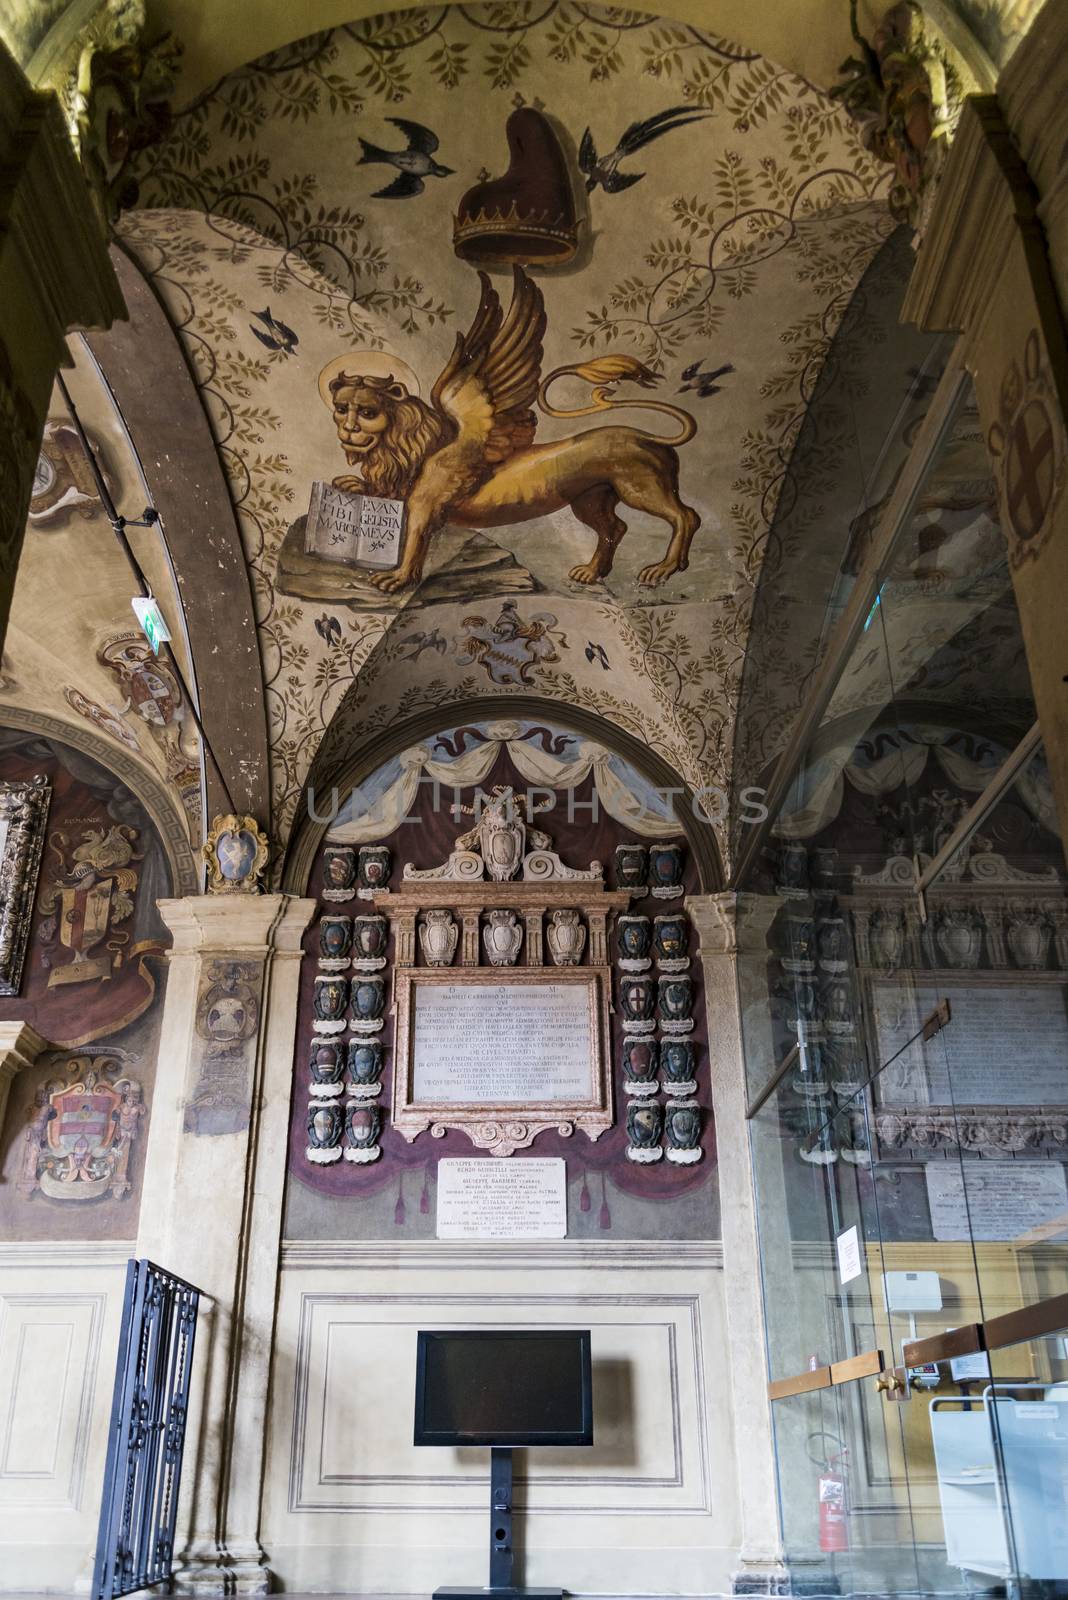 The Archiginnasio library of Bologna by edella